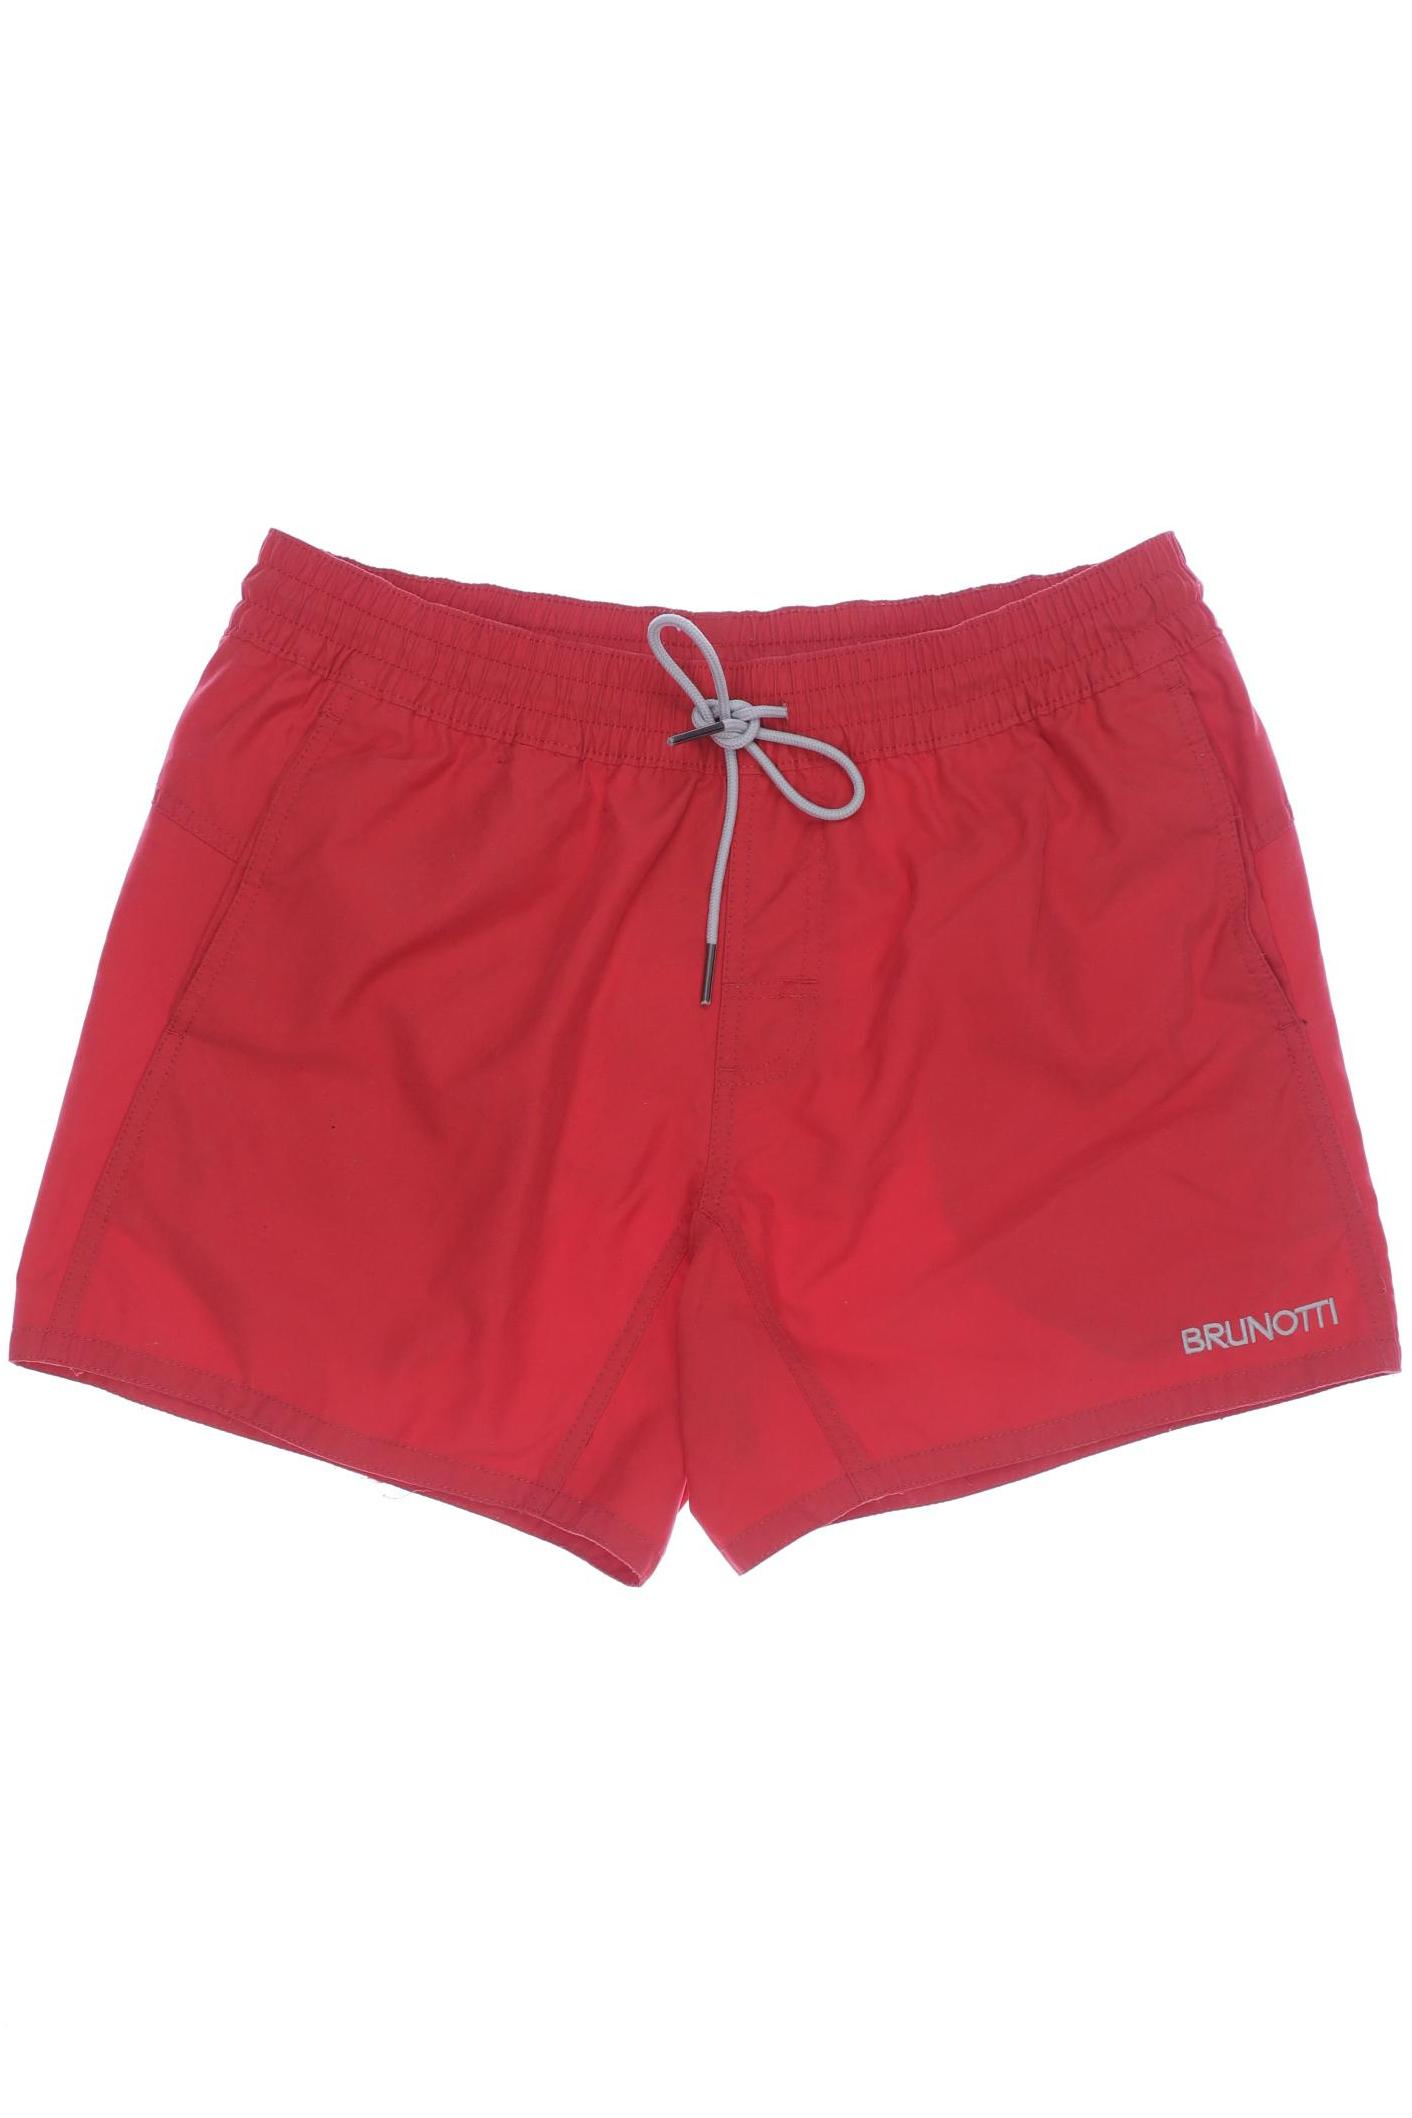 Brunotti Herren Shorts, rot, Gr. 52 von brunotti